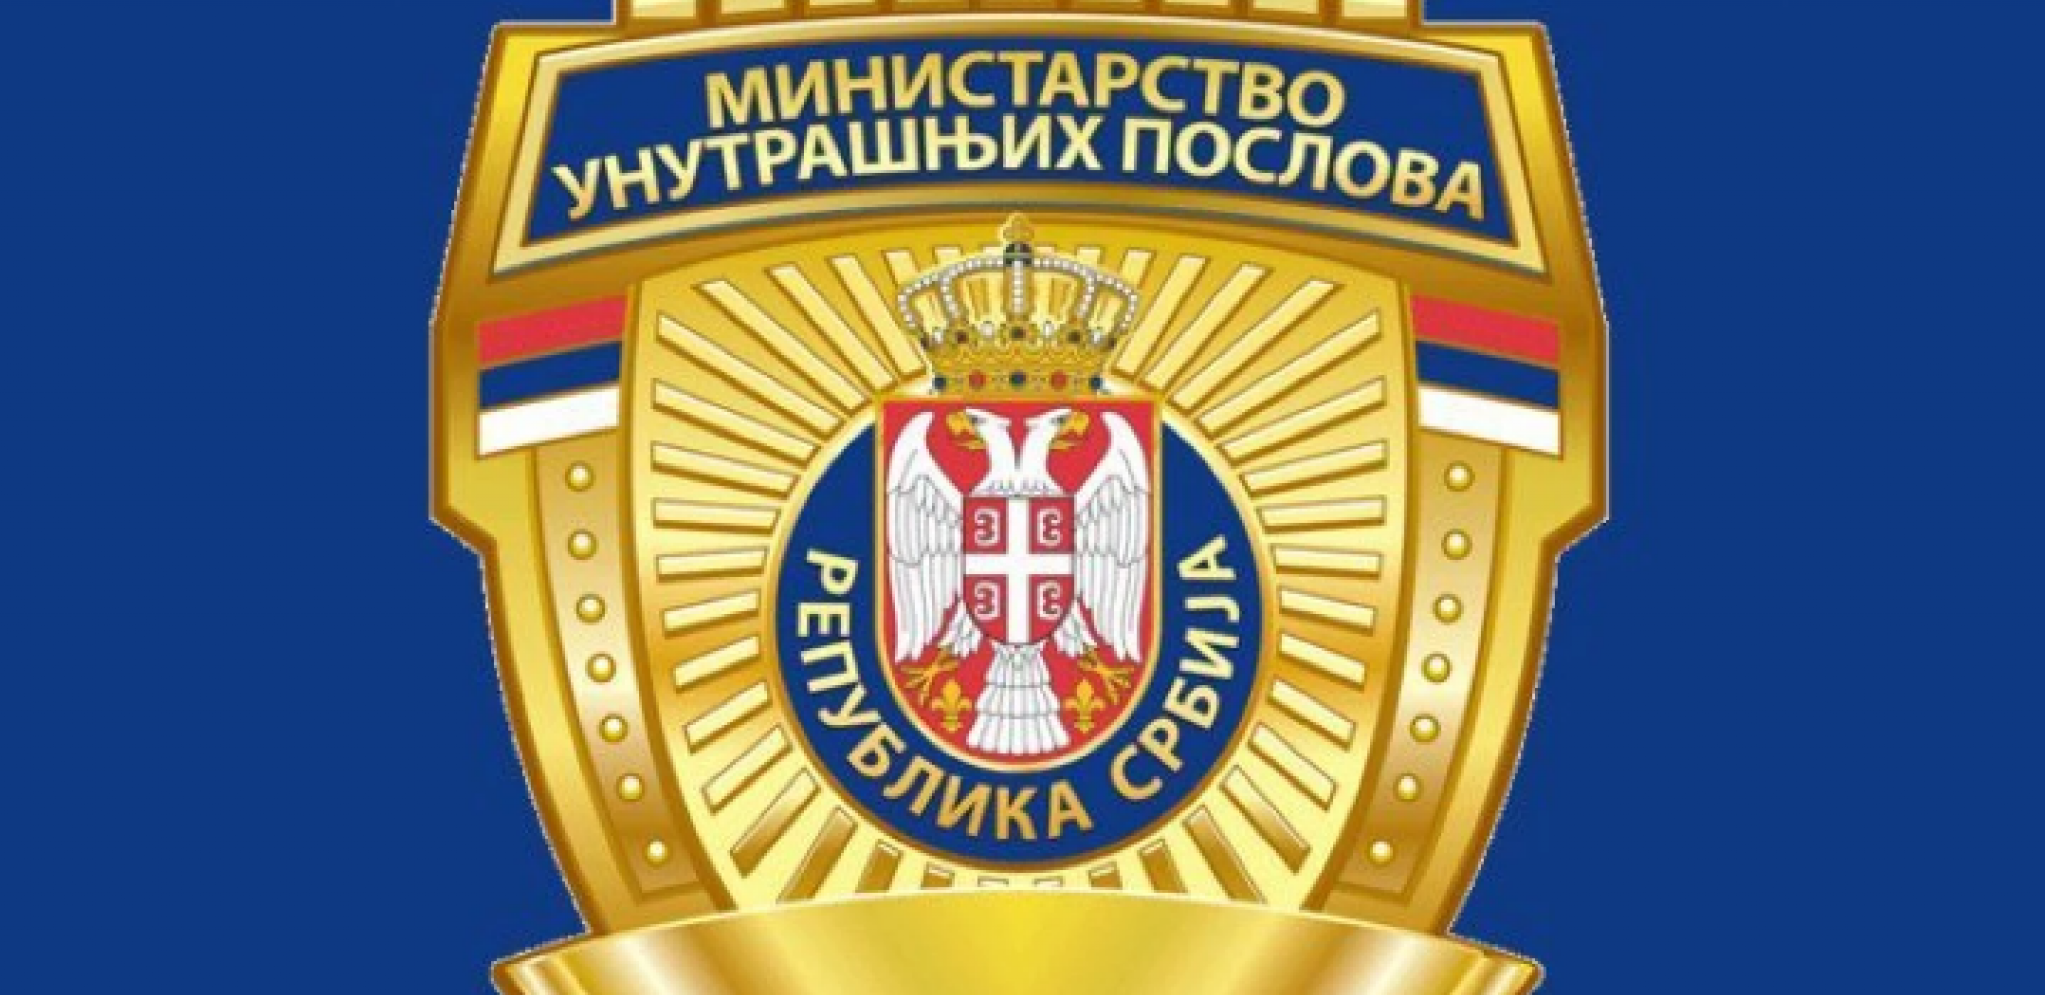 DEMANTOVALI LAŽNE NAVODE KOJE PLASIRAJU POJEDINI MEDIJI Oglasio se MUP o kineskim policijskim stanicama u Srbiji